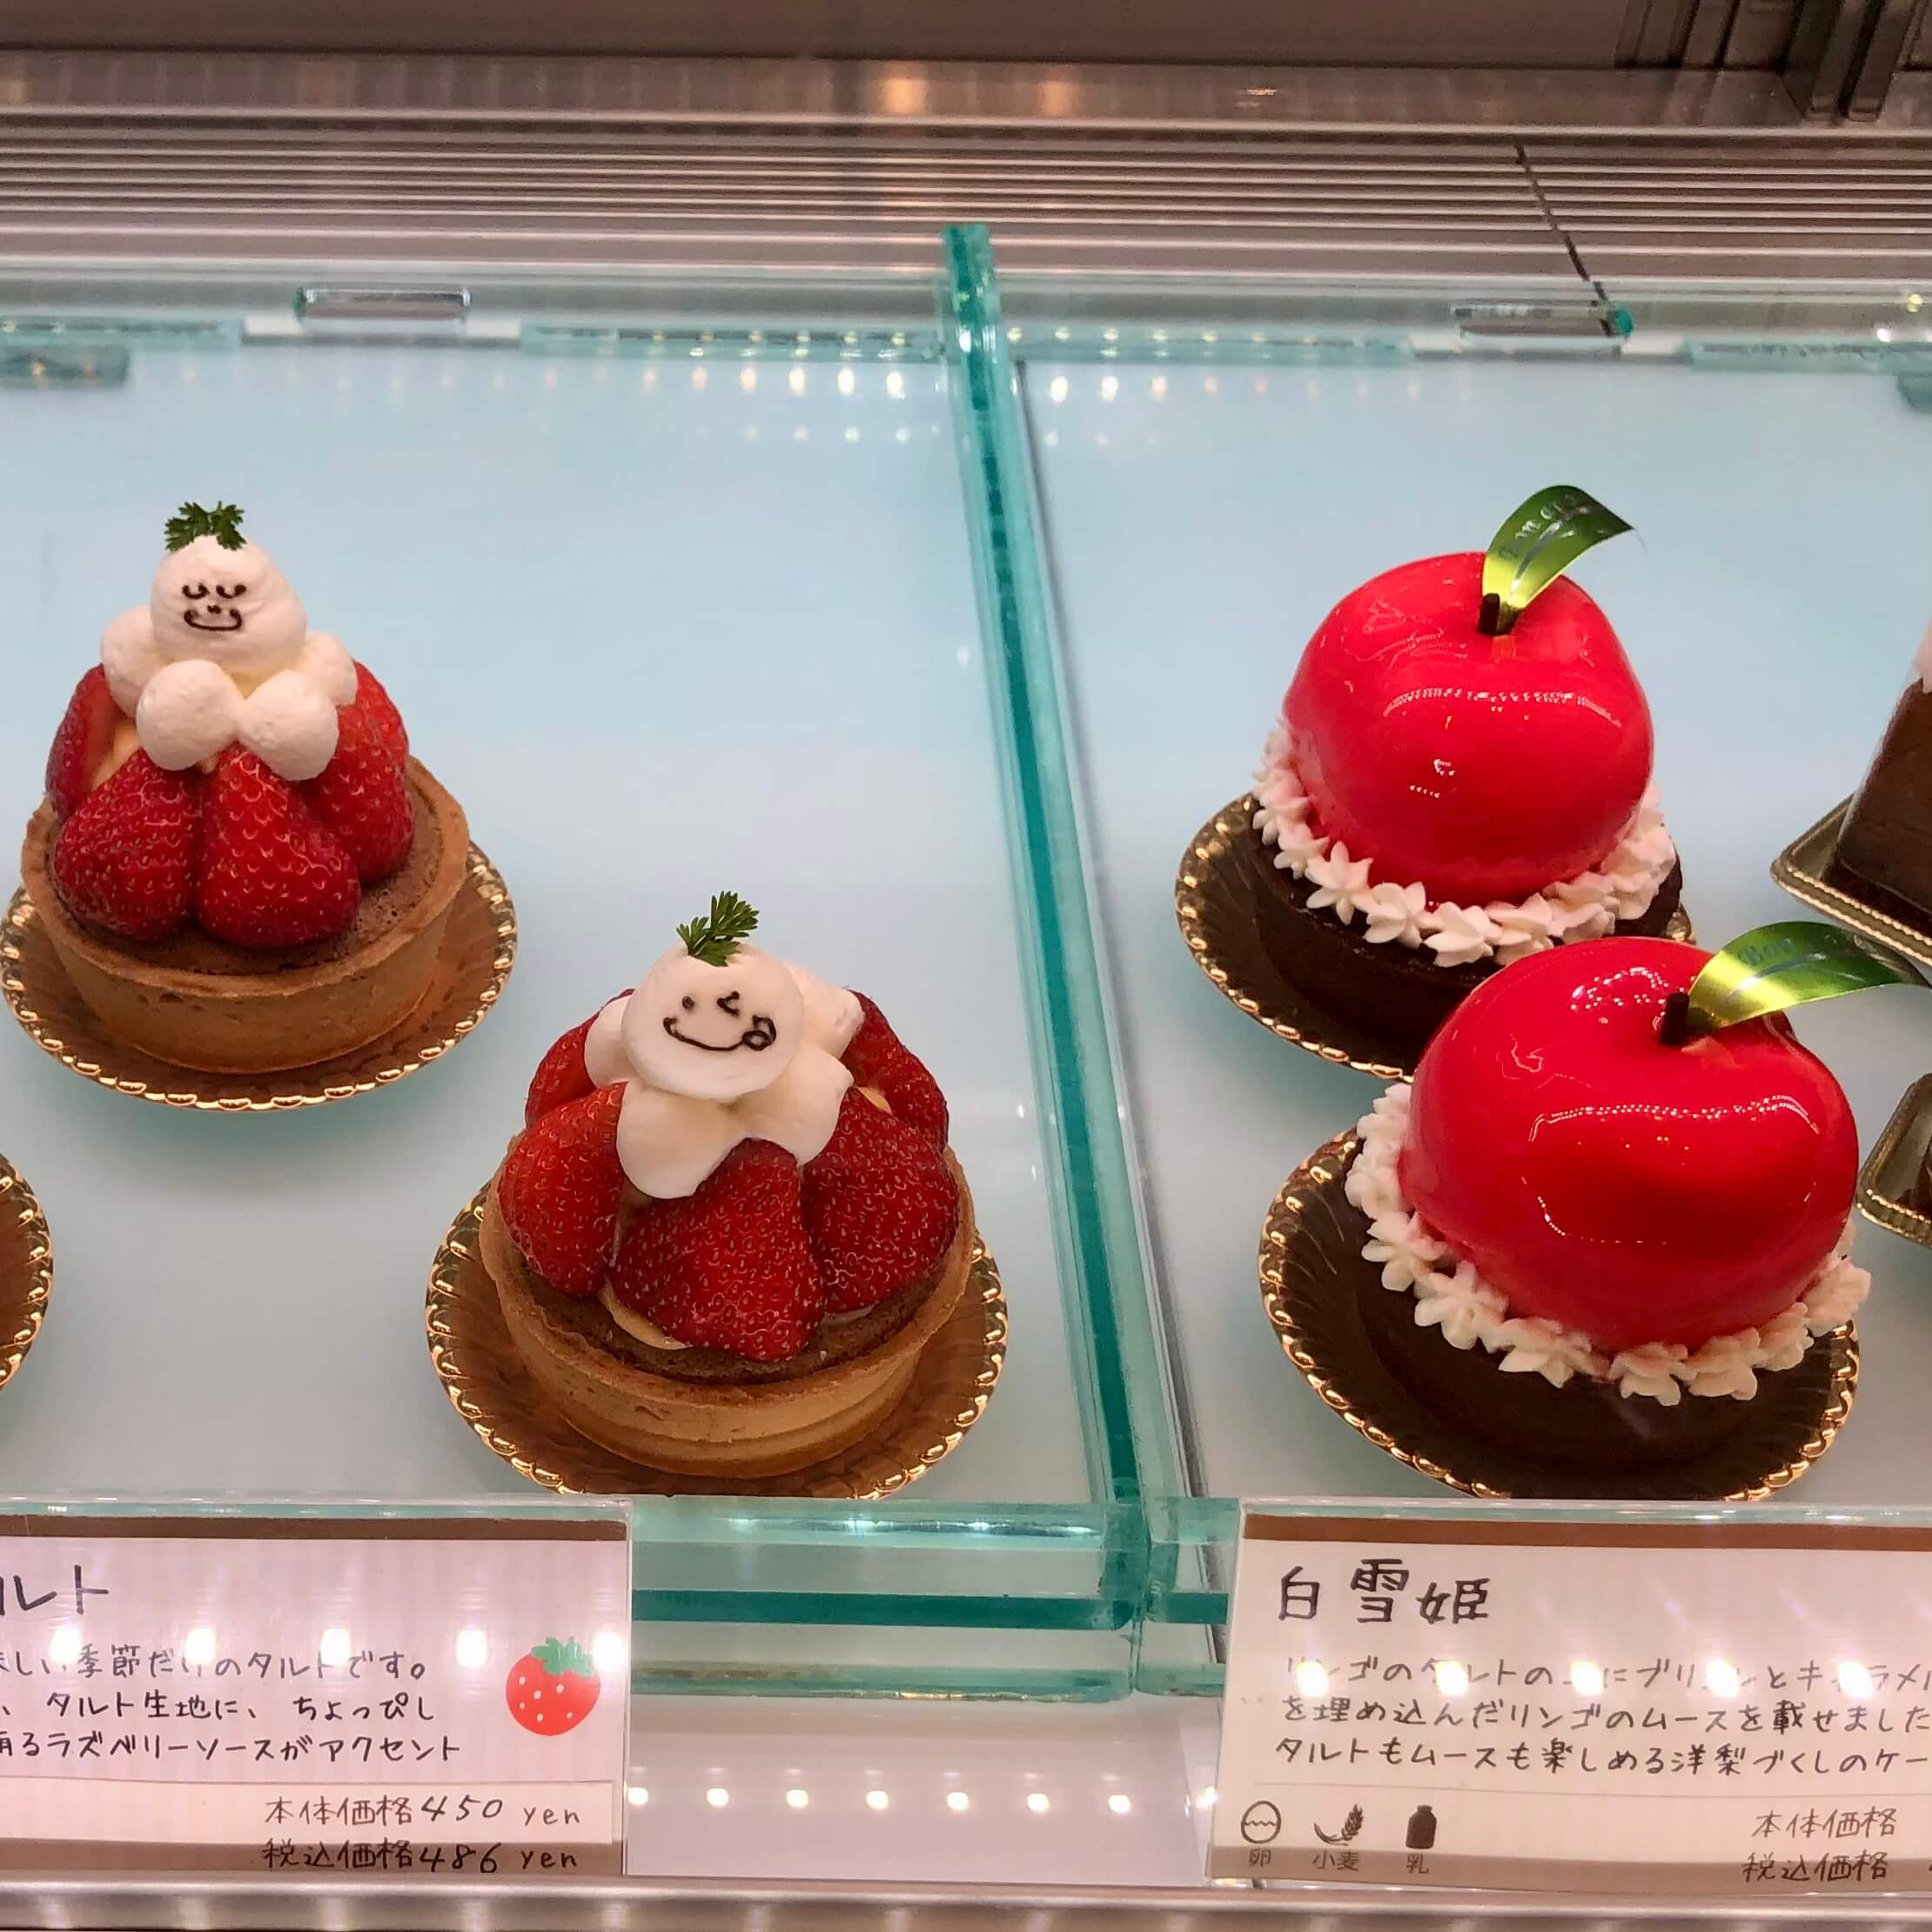 大阪 高槻駅の近くで可愛いケーキ屋さん見つけました Lee